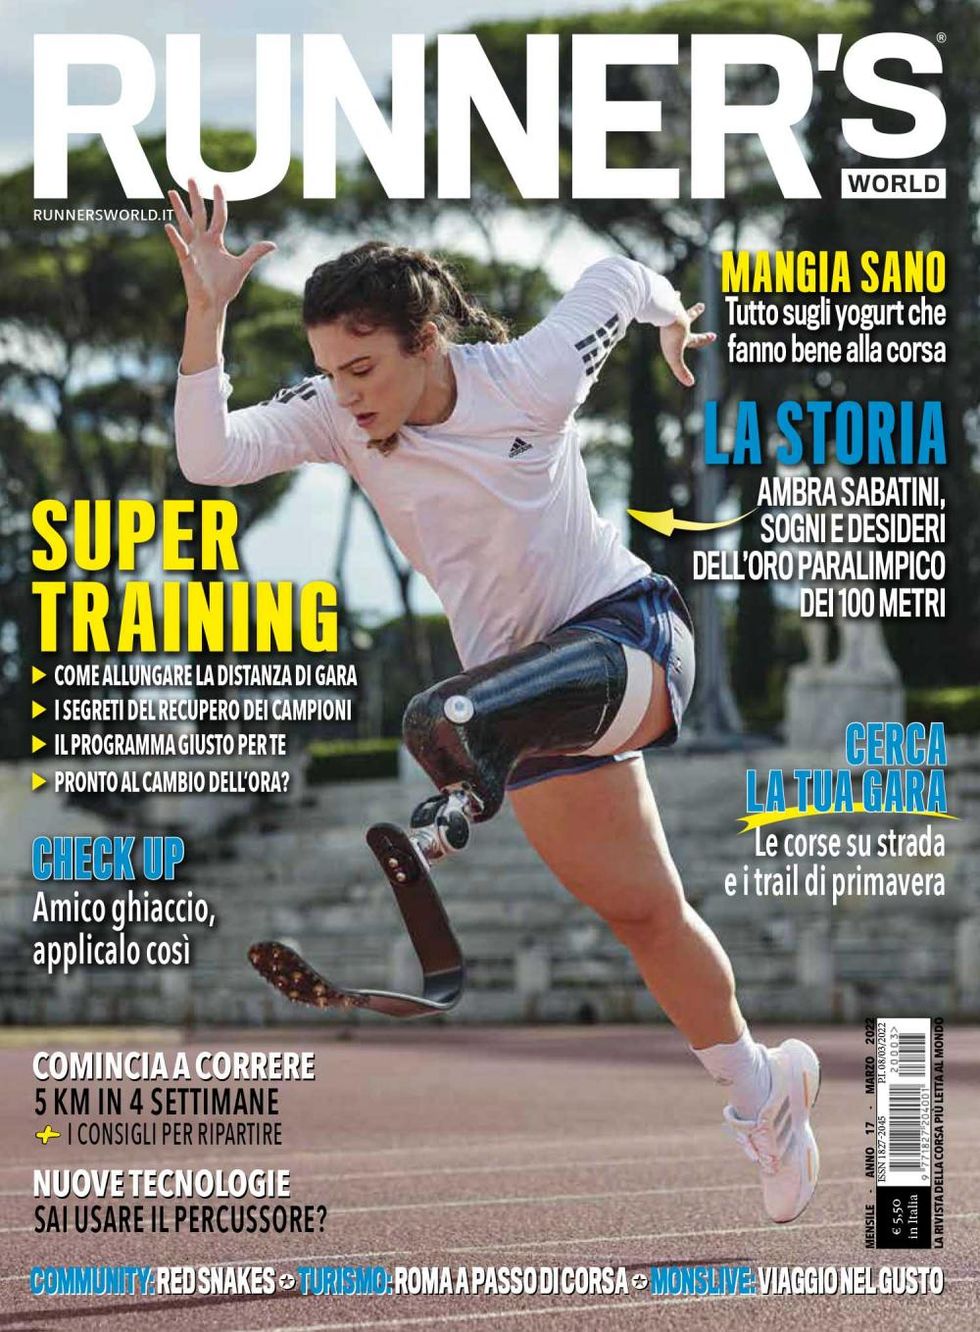 La cover del nuovo numero di Runner's World di marzo 2022